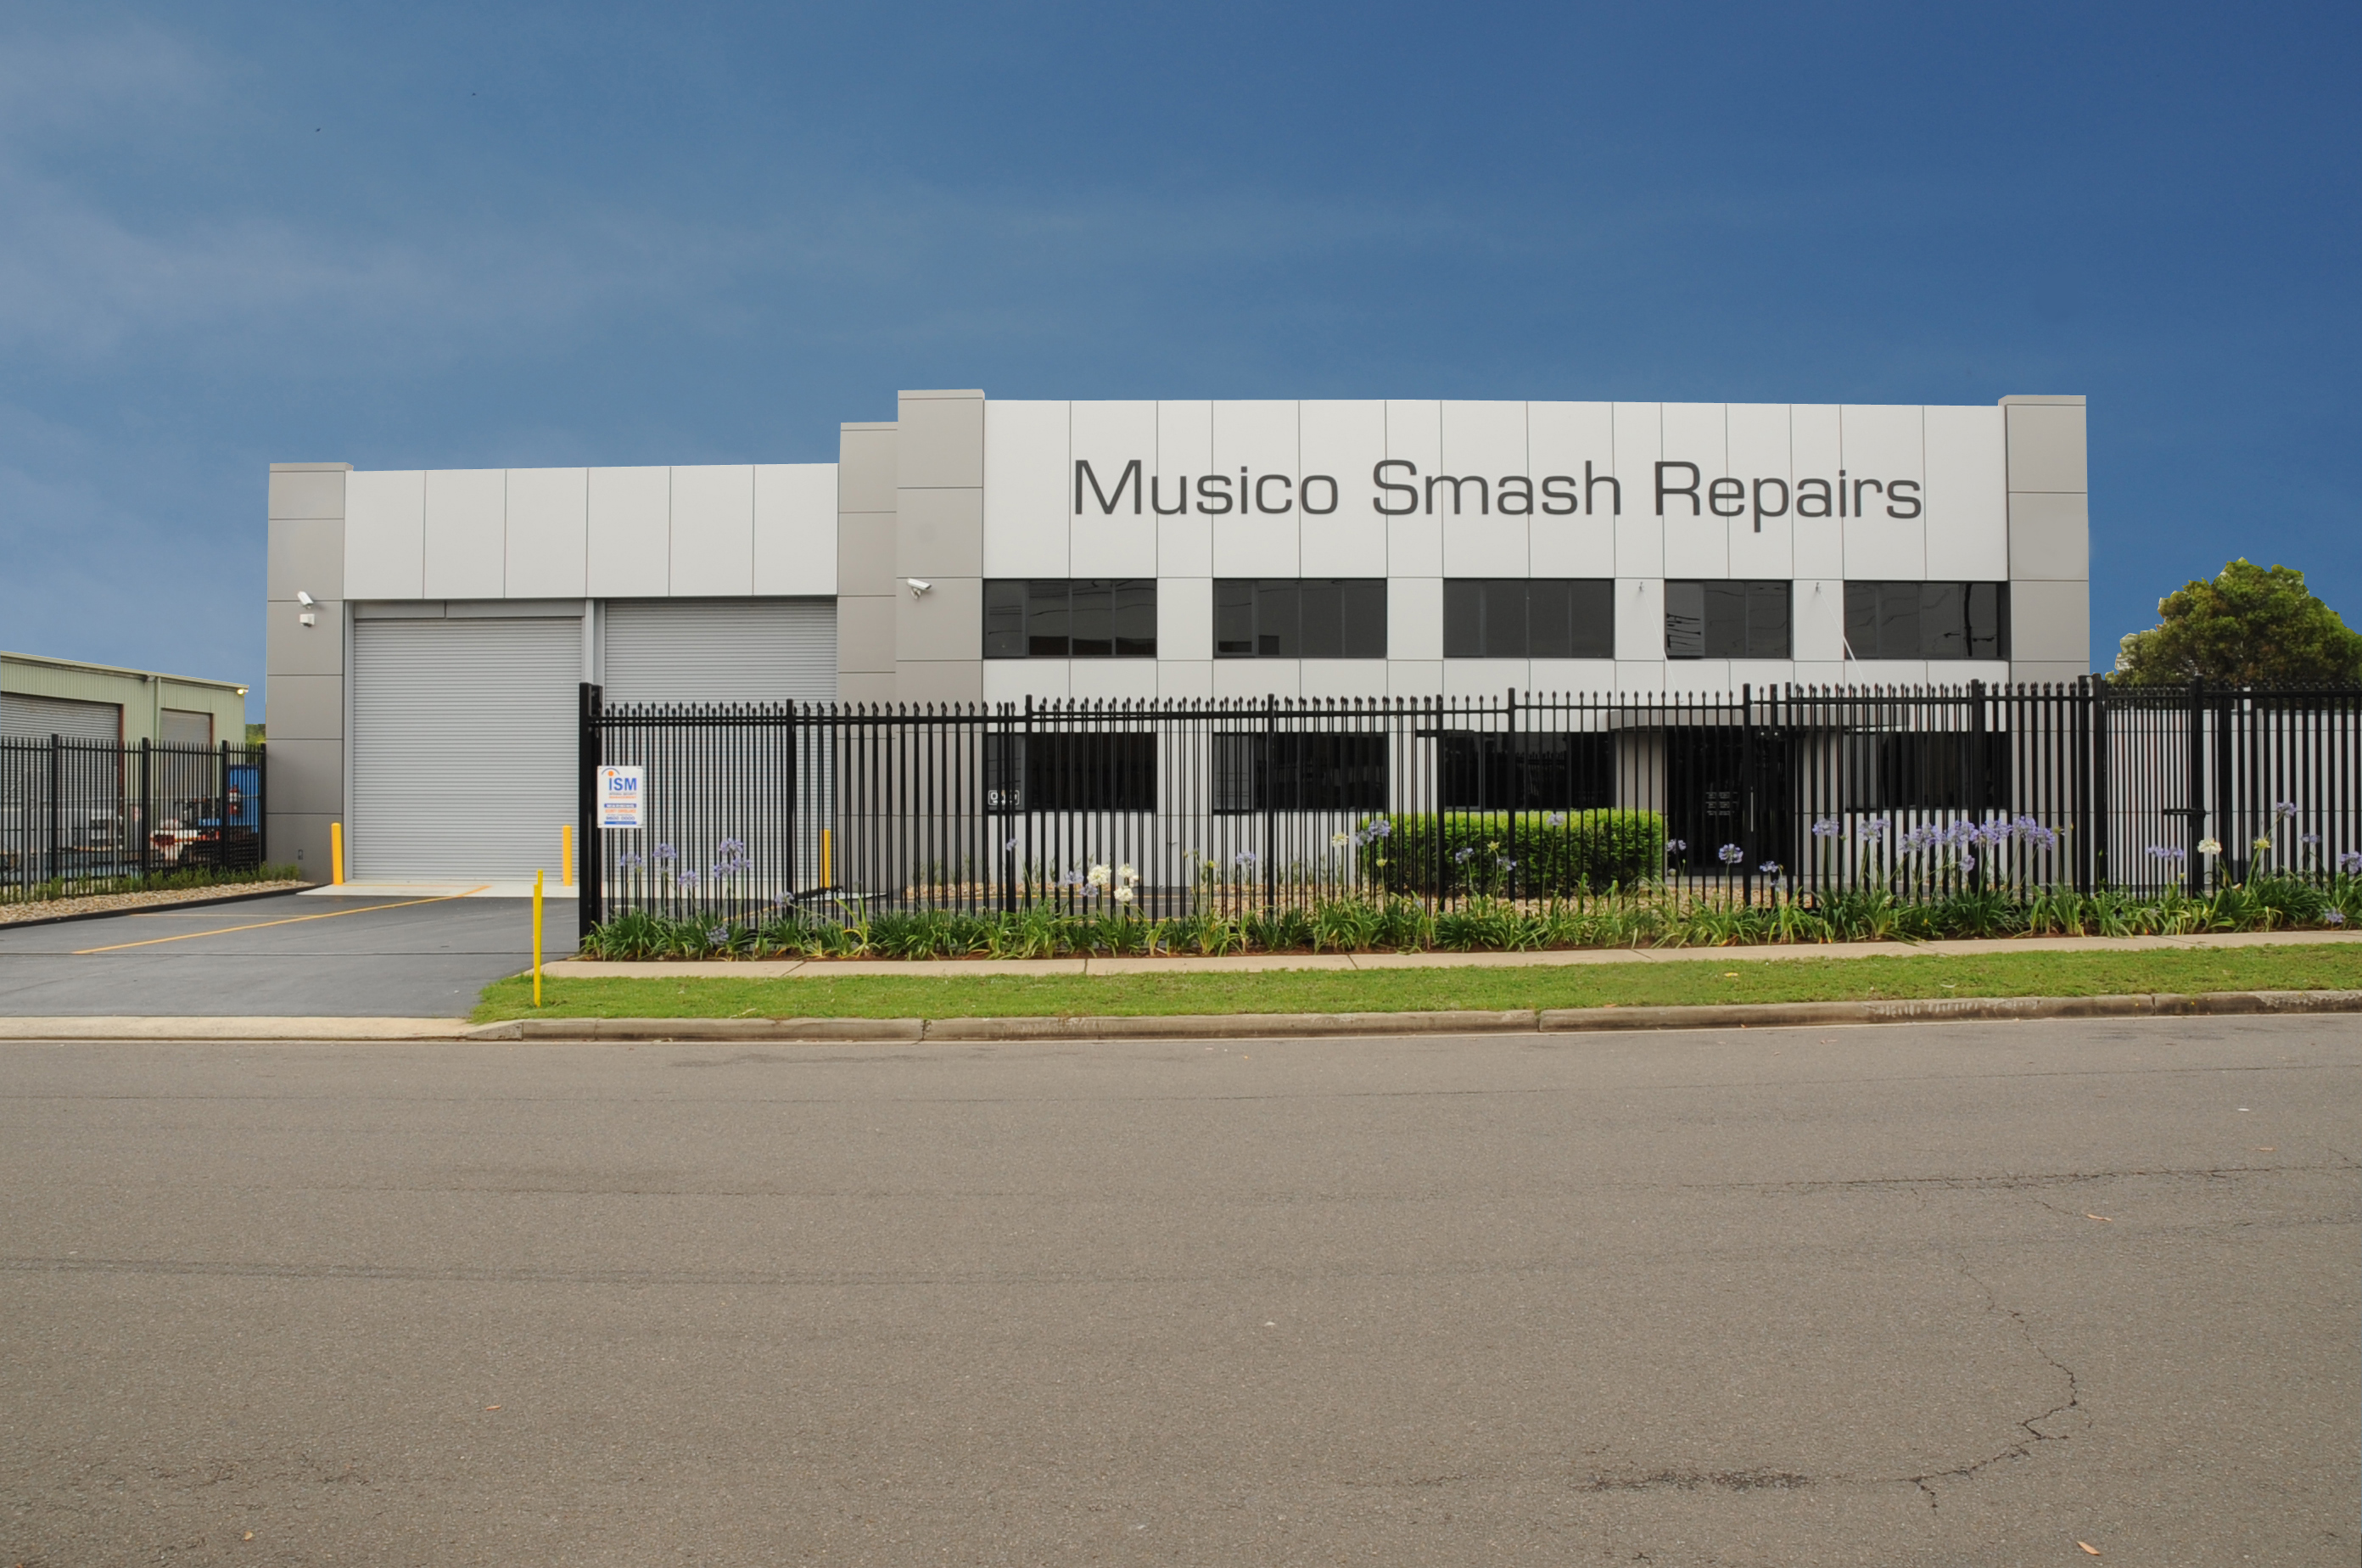 Musico Smash Repairs